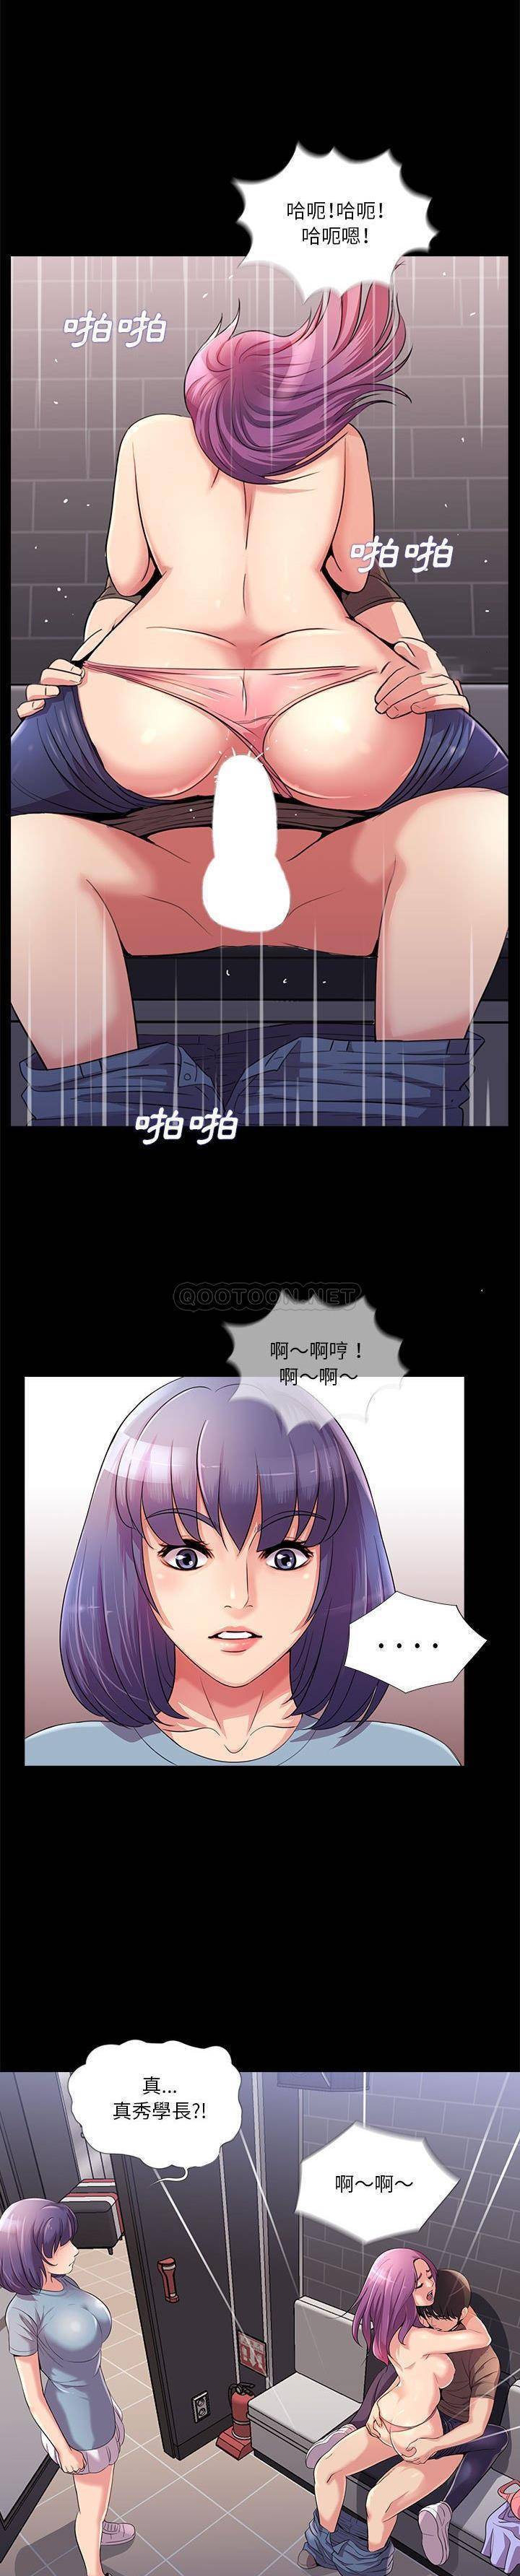 韩国污漫画 神秘復學生 第24话 1